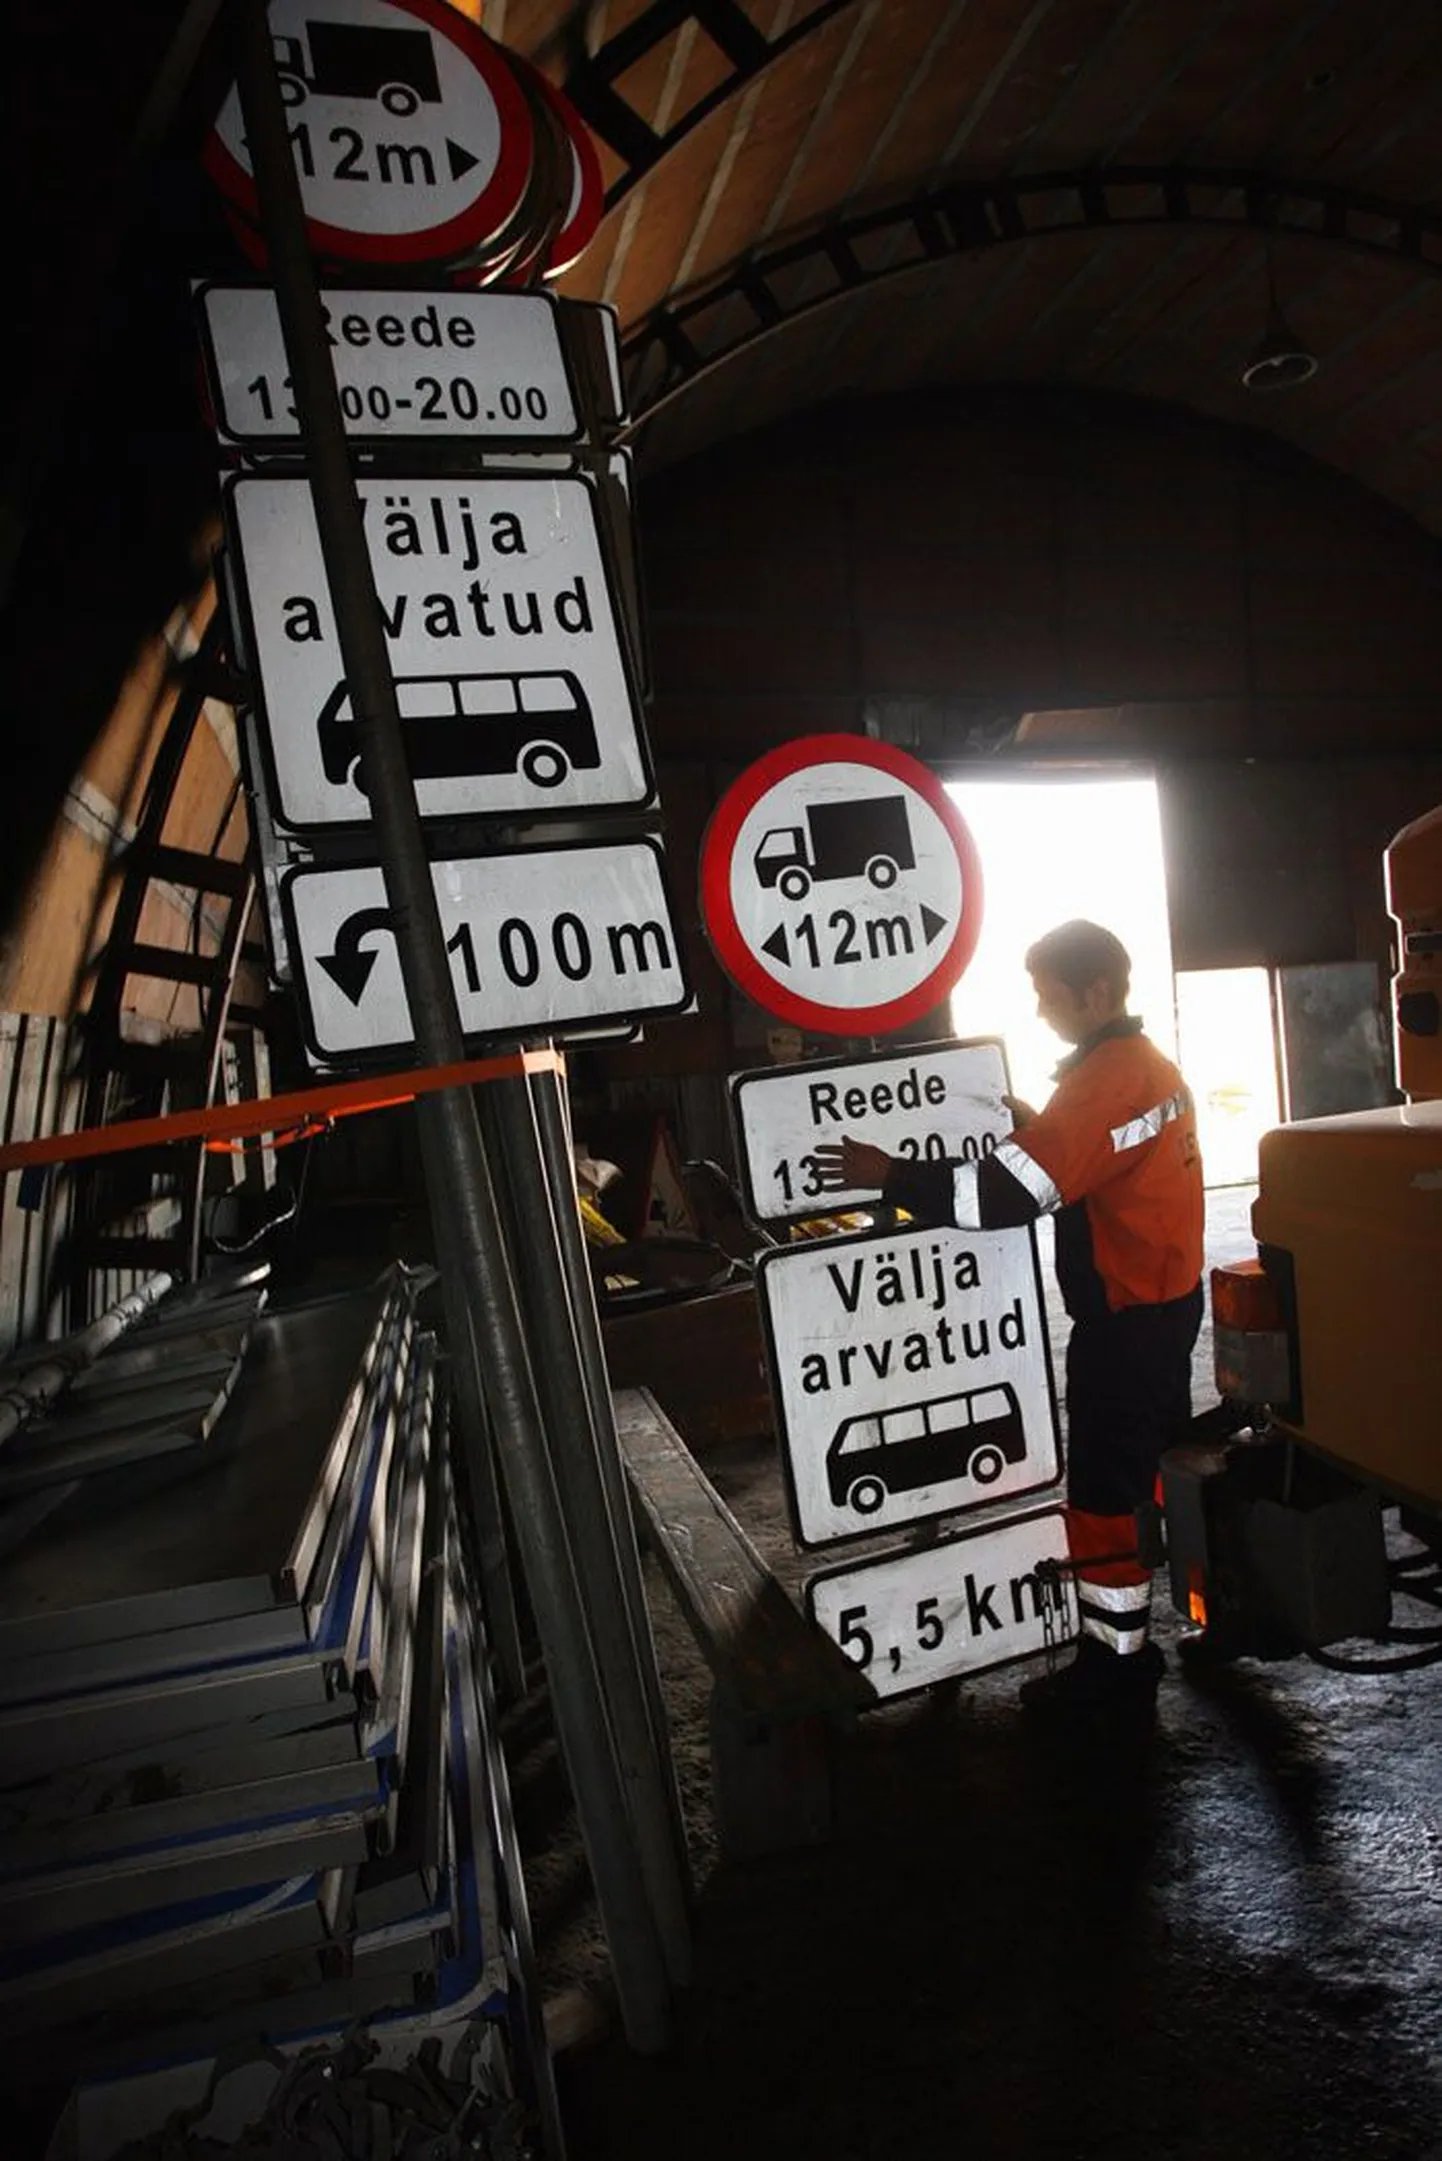 Liiklusmärgid, millega pikad aeglased veokid Tallinna-Tartu maanteelt Piibe maanteele ja teistele väiksematele teedele juhtida, on Tallinna külje all Kosel OÜ Üle laos eelmisest korrast ootel.